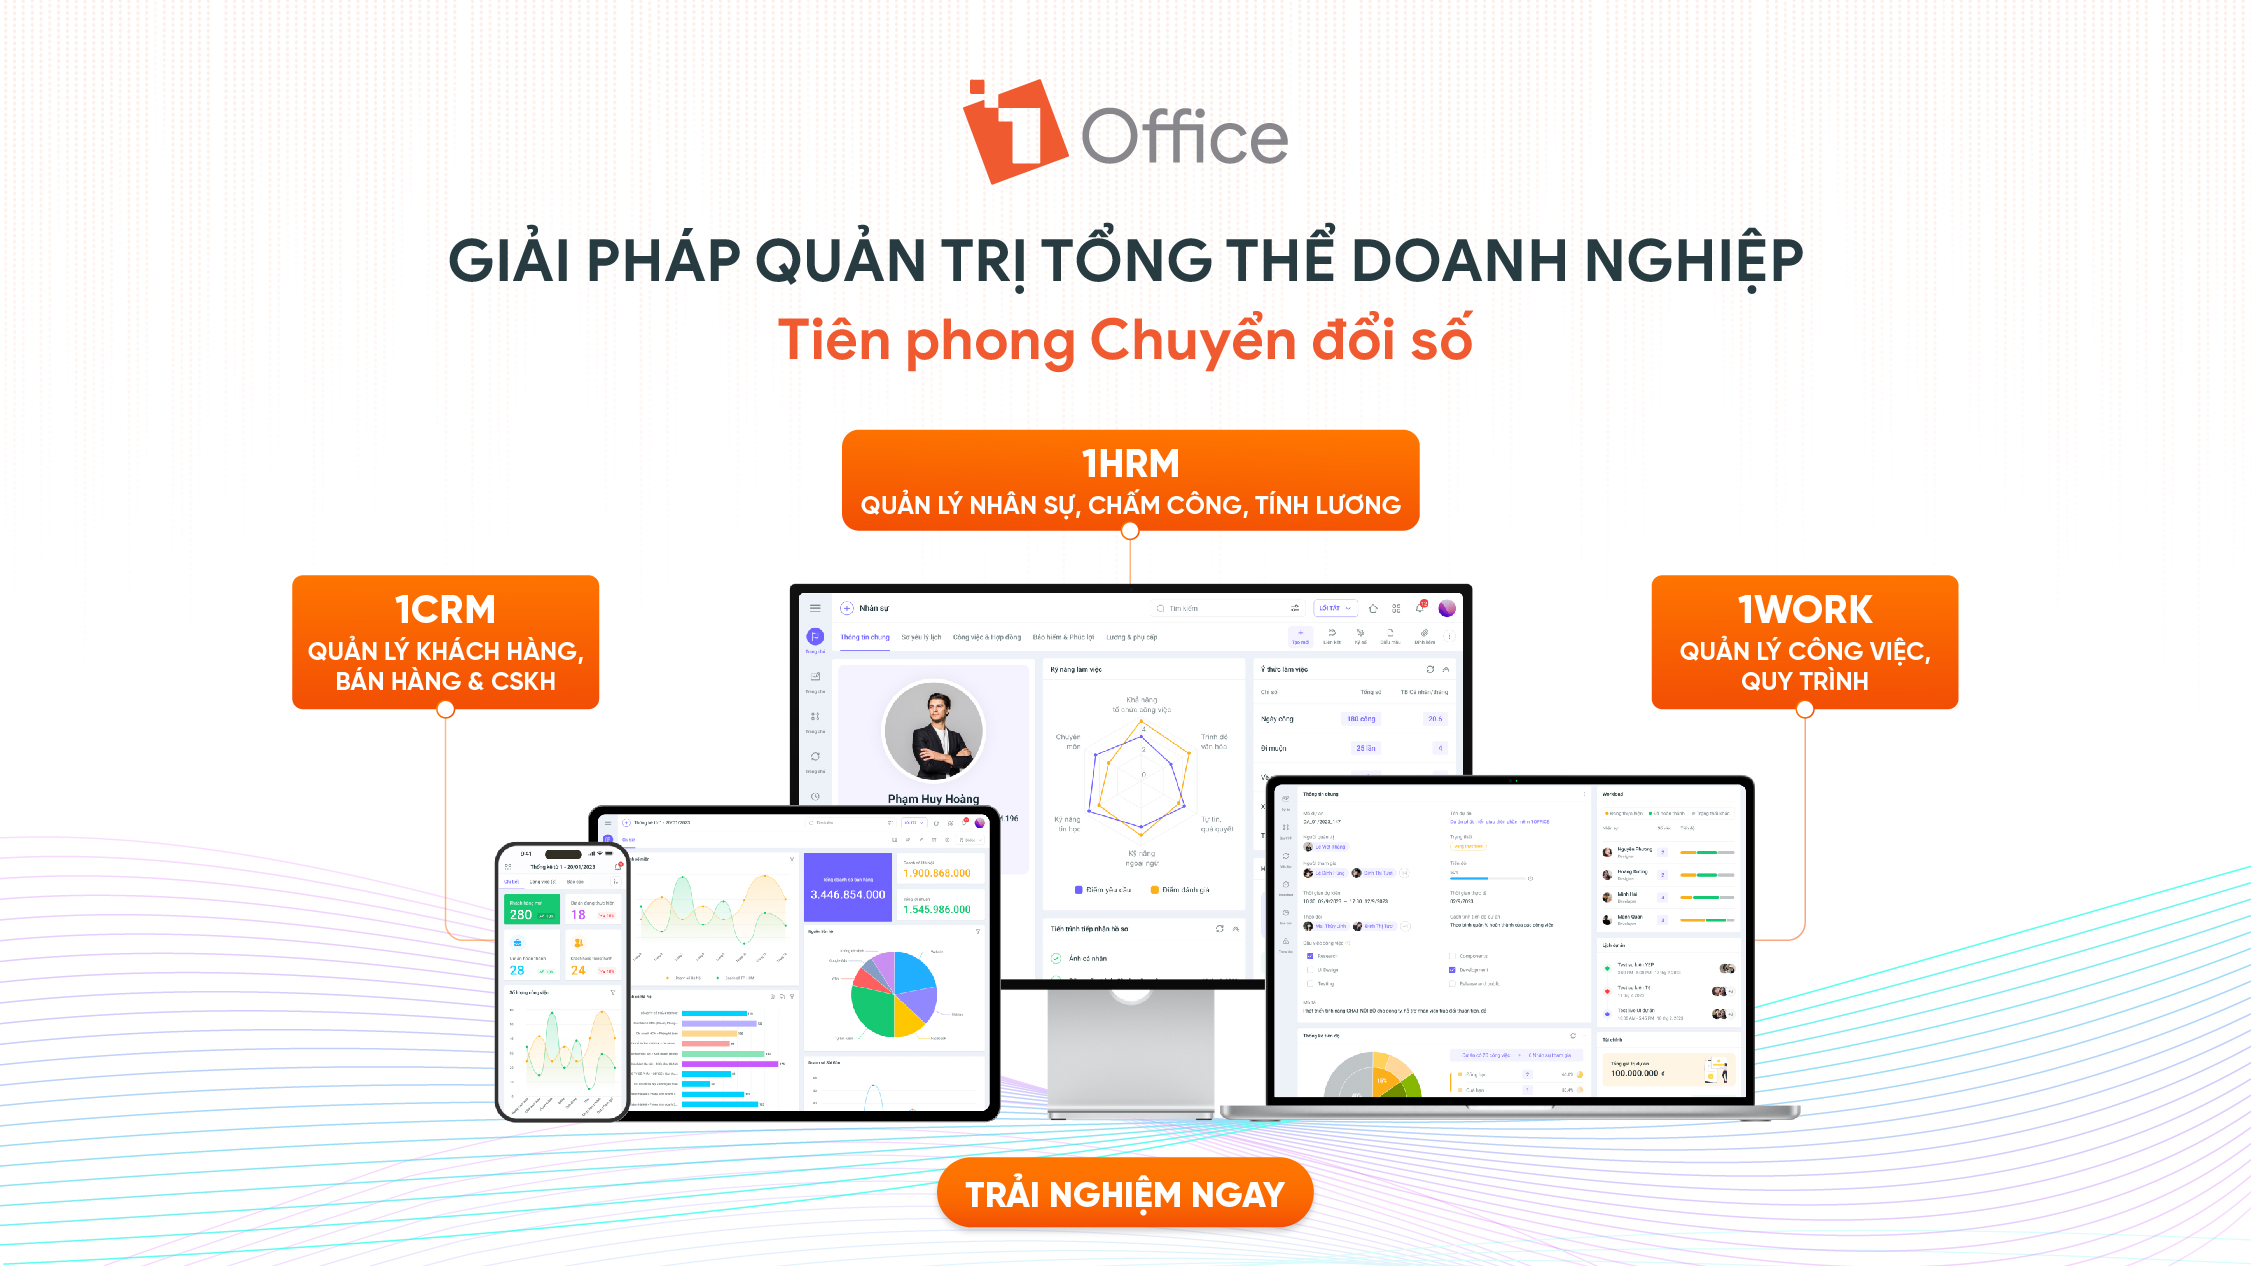 Phần mềm quản trị văn phòng 1Office